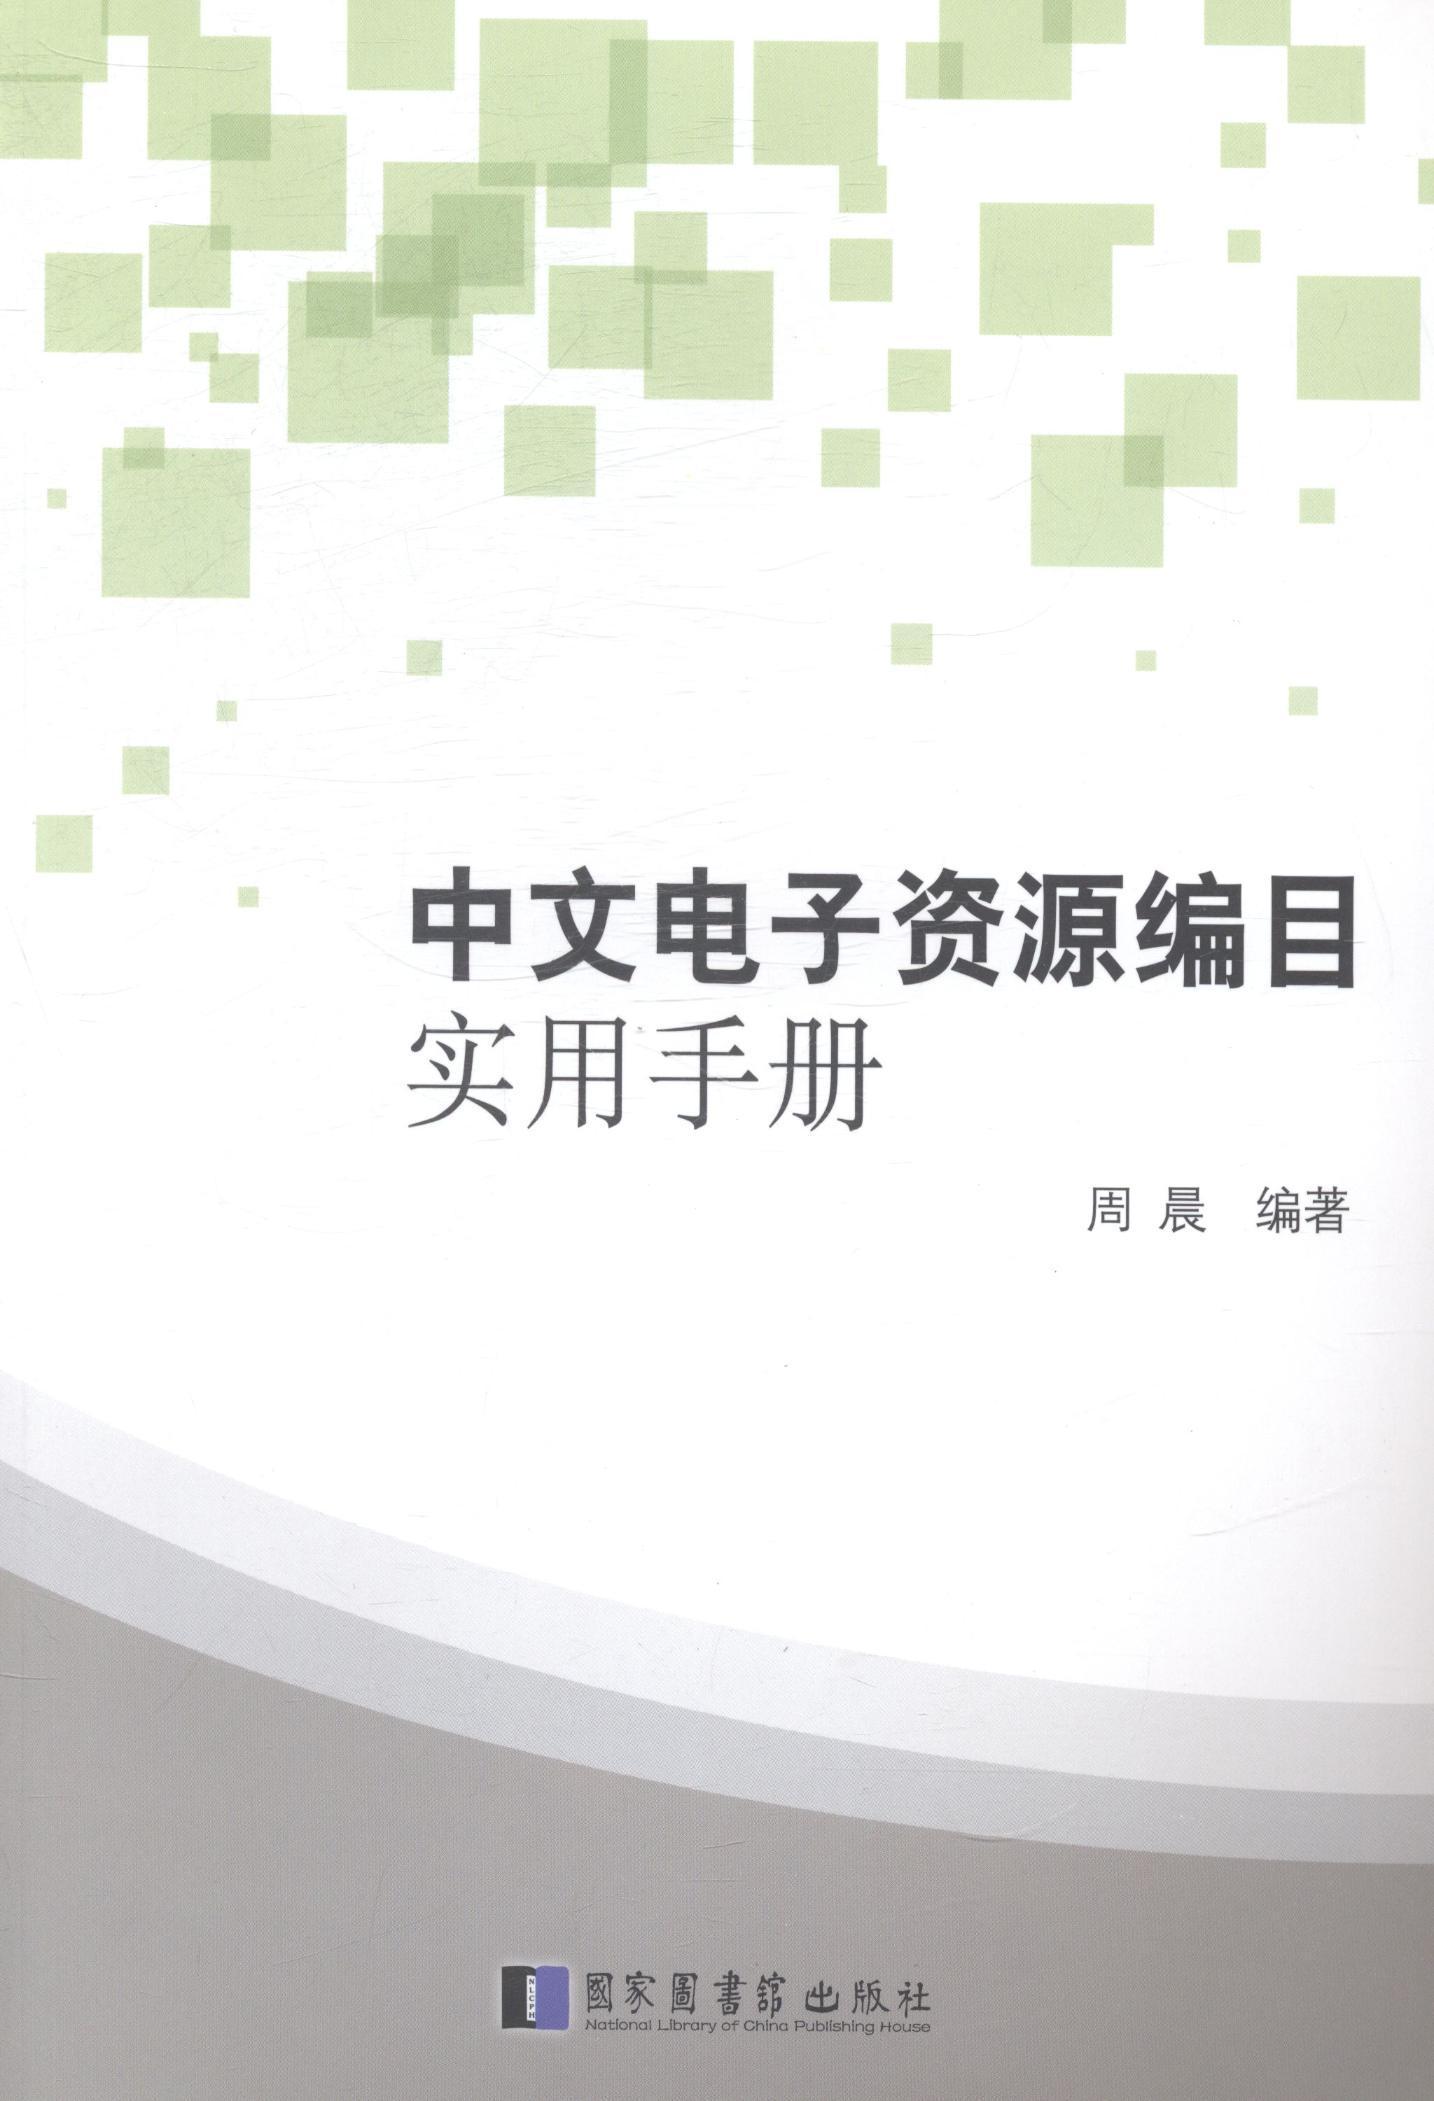 RT 正版 中文电子资源编目实用手册9787501353606 周晨国家图书馆出版社